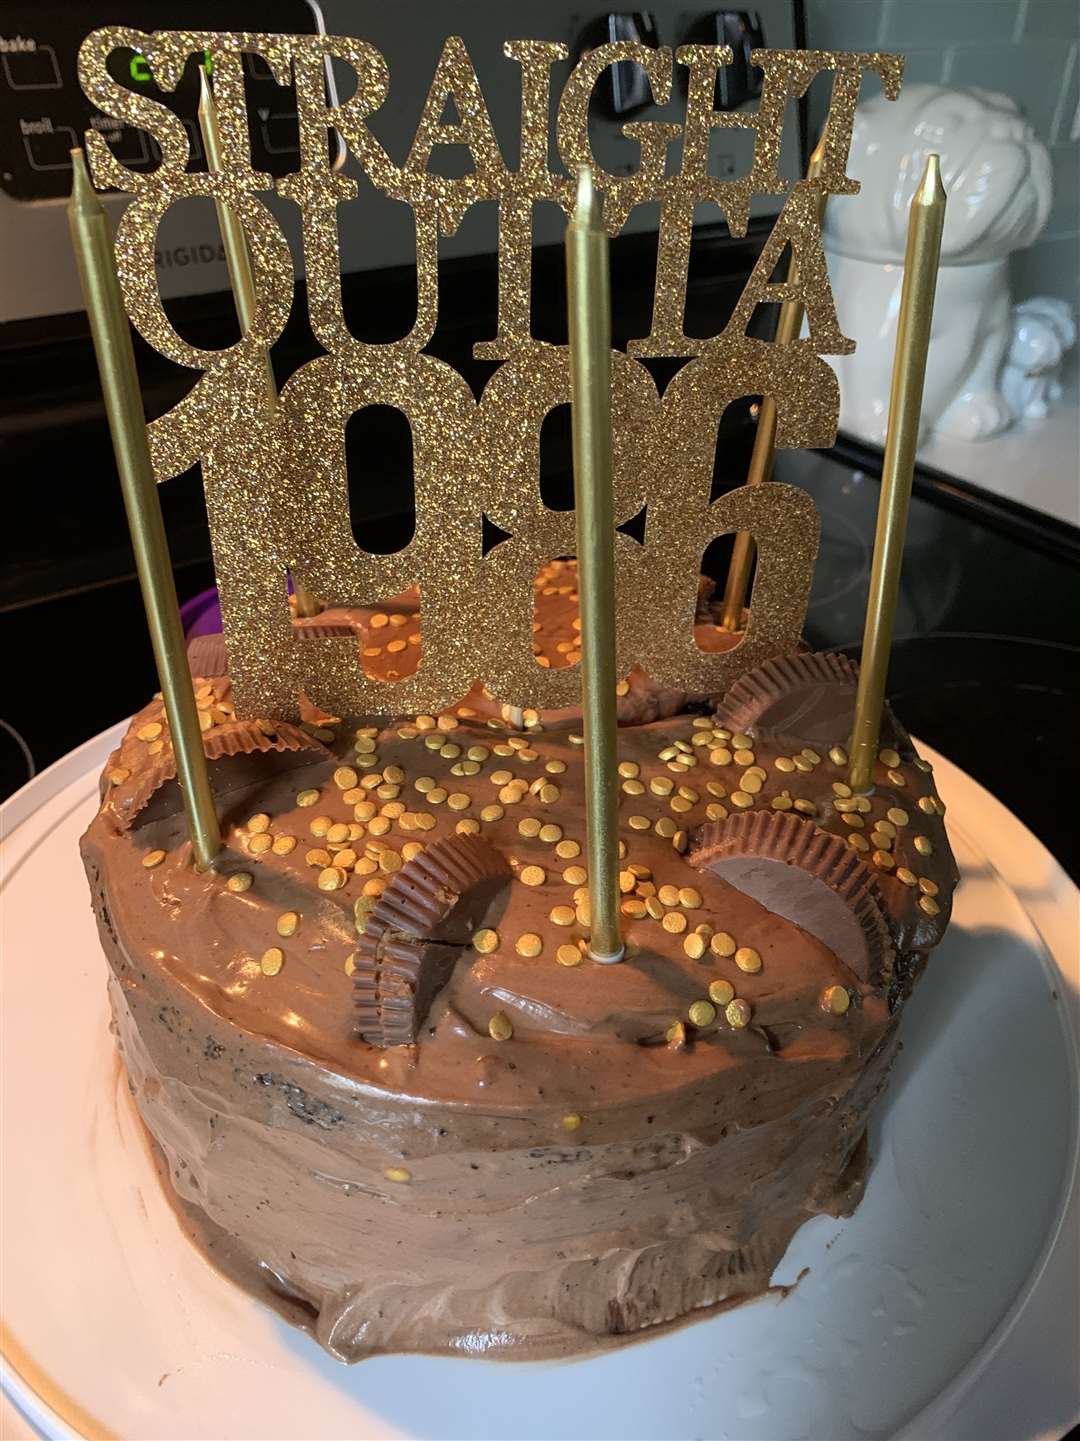 The cake Diane baked for Garrett’s birthday last year.